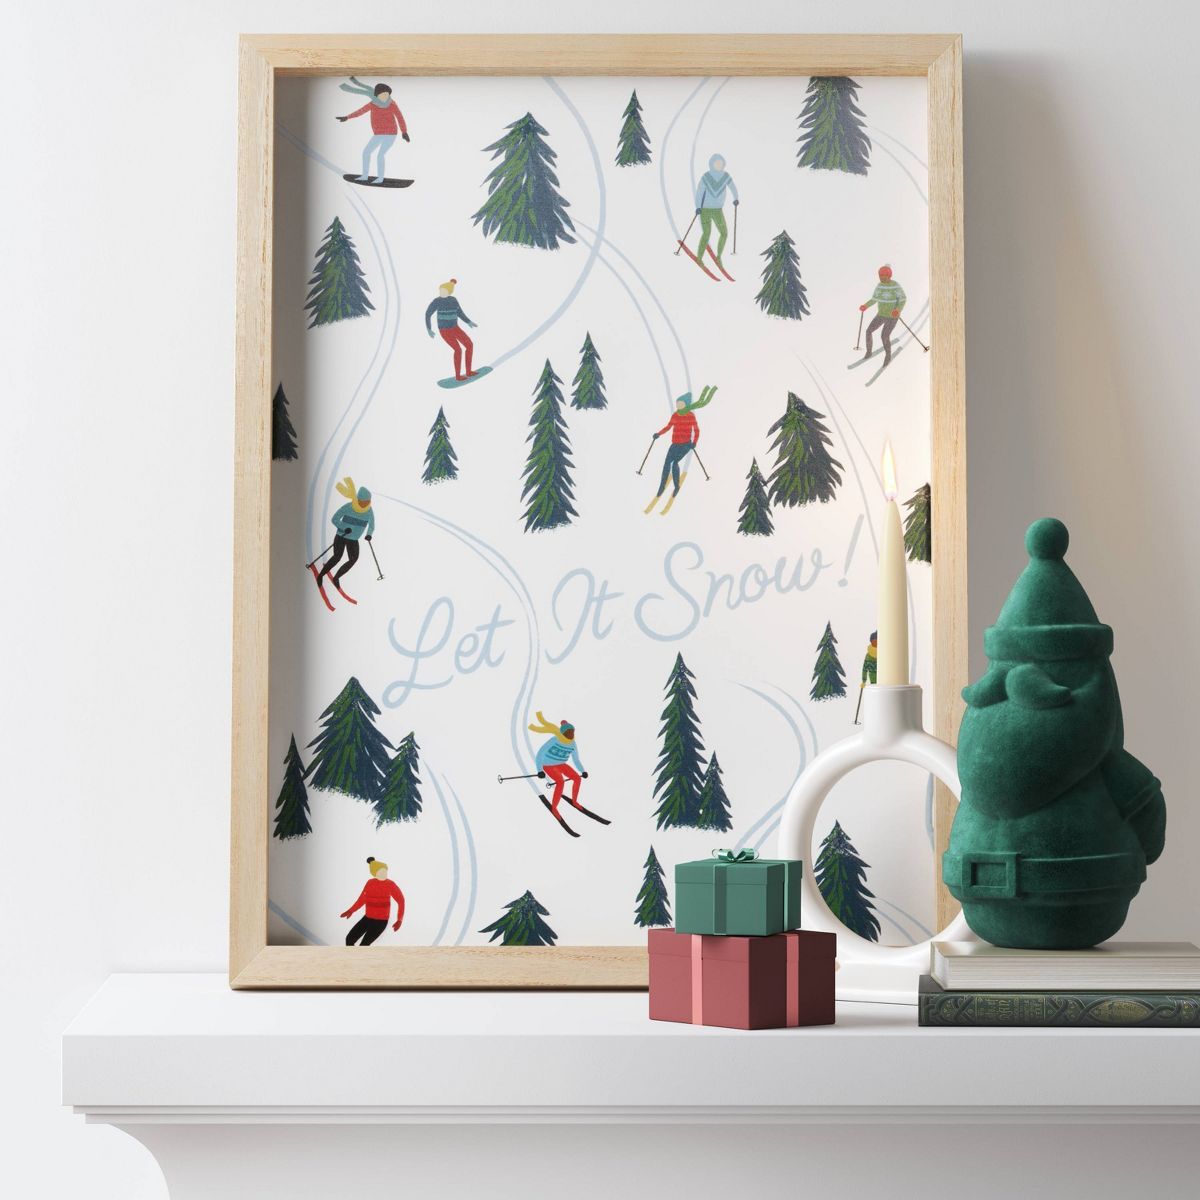 21"x16" Wood 'Let it Snow' Ski Slope Christmas Wall Art  - Wondershop™ | Target